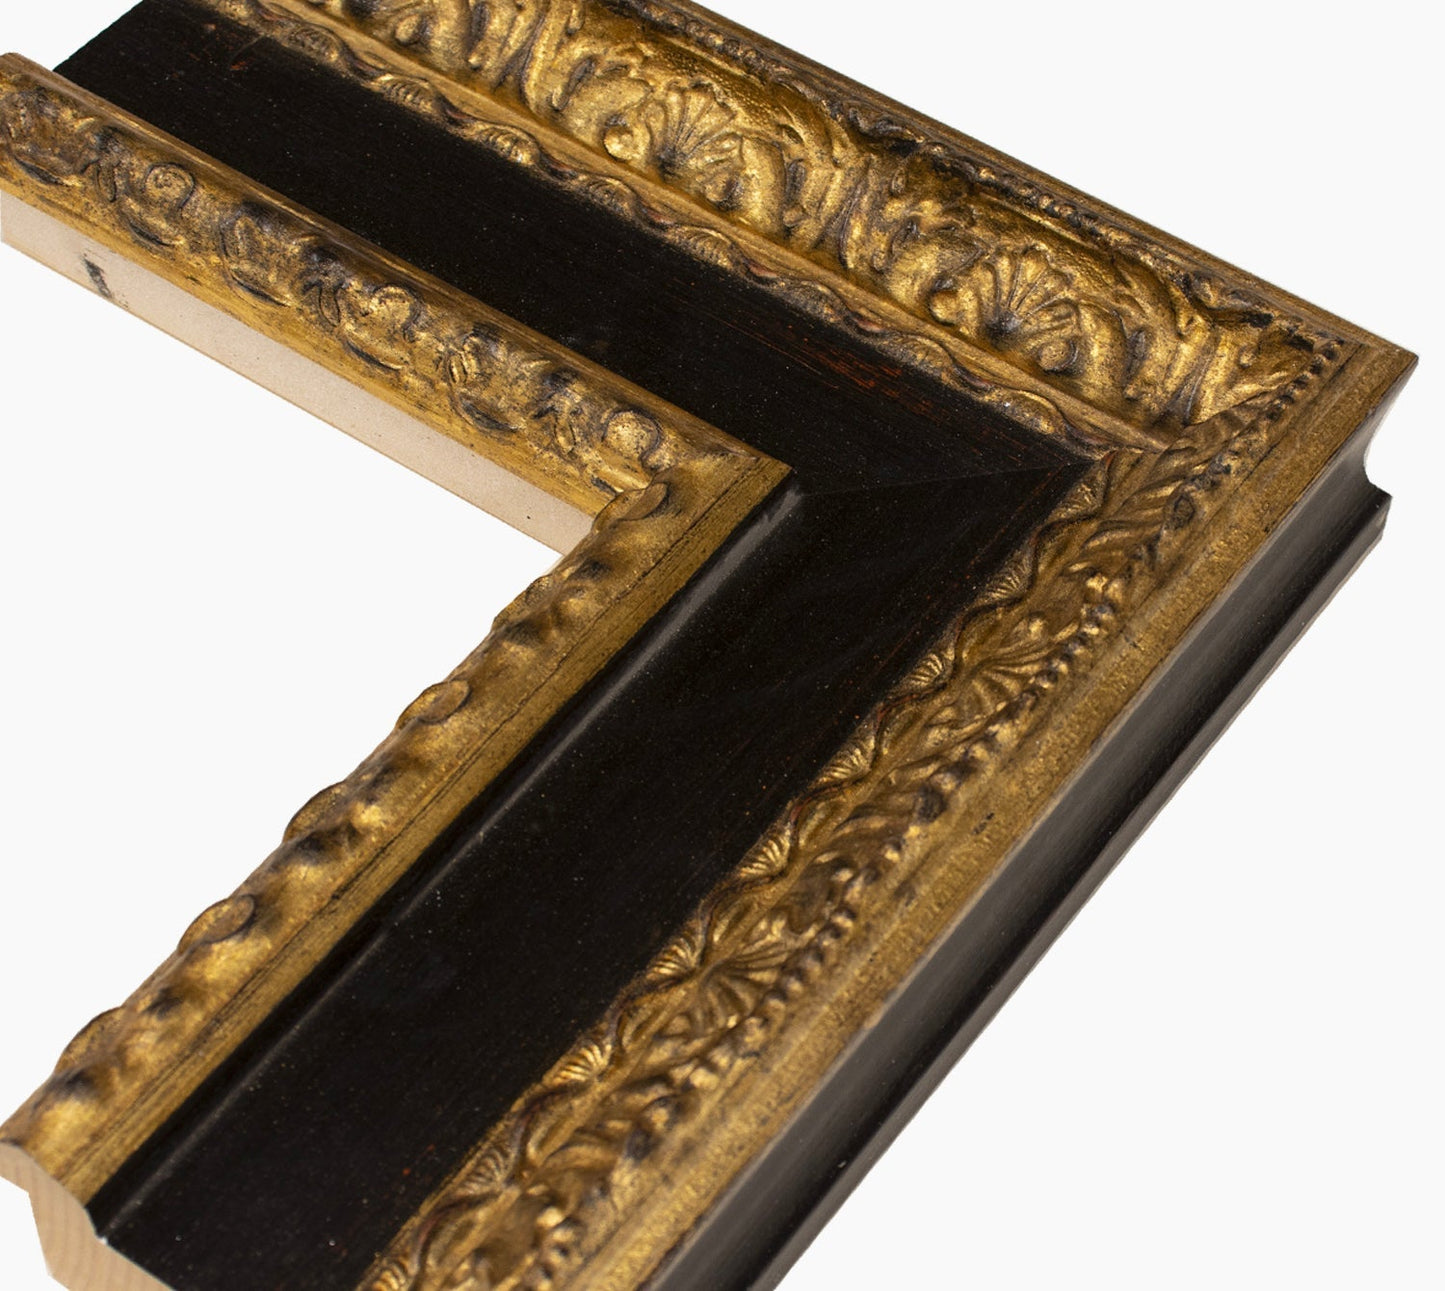 743.601 cadre en bois à la feuille d'or à gorge noire  mesure de profil 100x53 mm Lombarda cornici S.n.c.